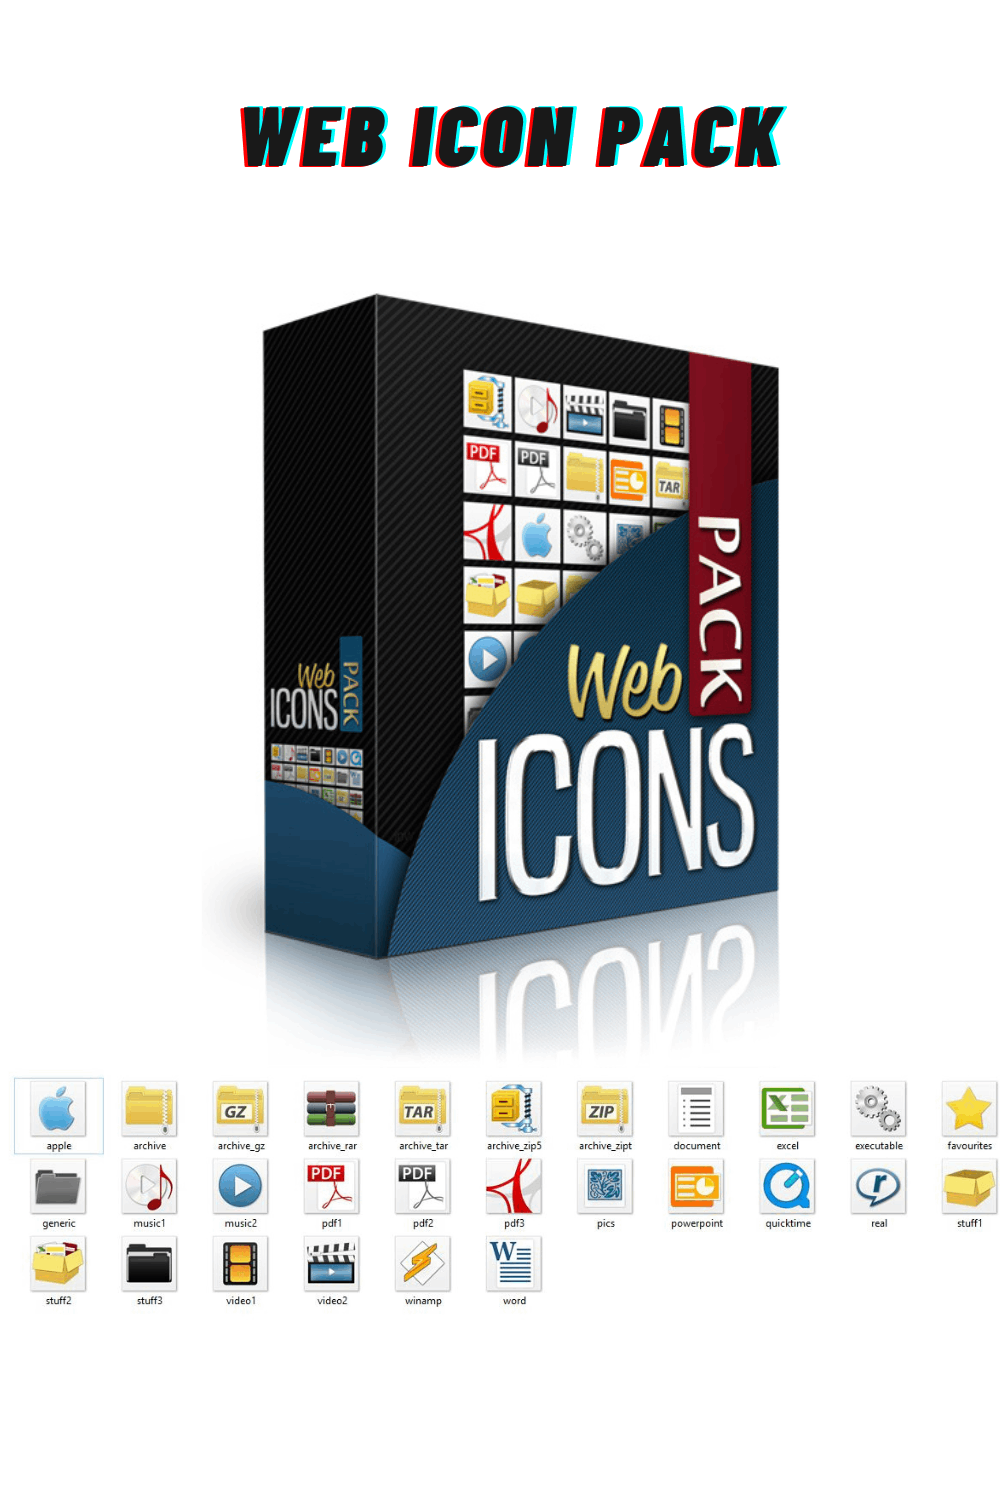 Web Icons Pack pinterest image.